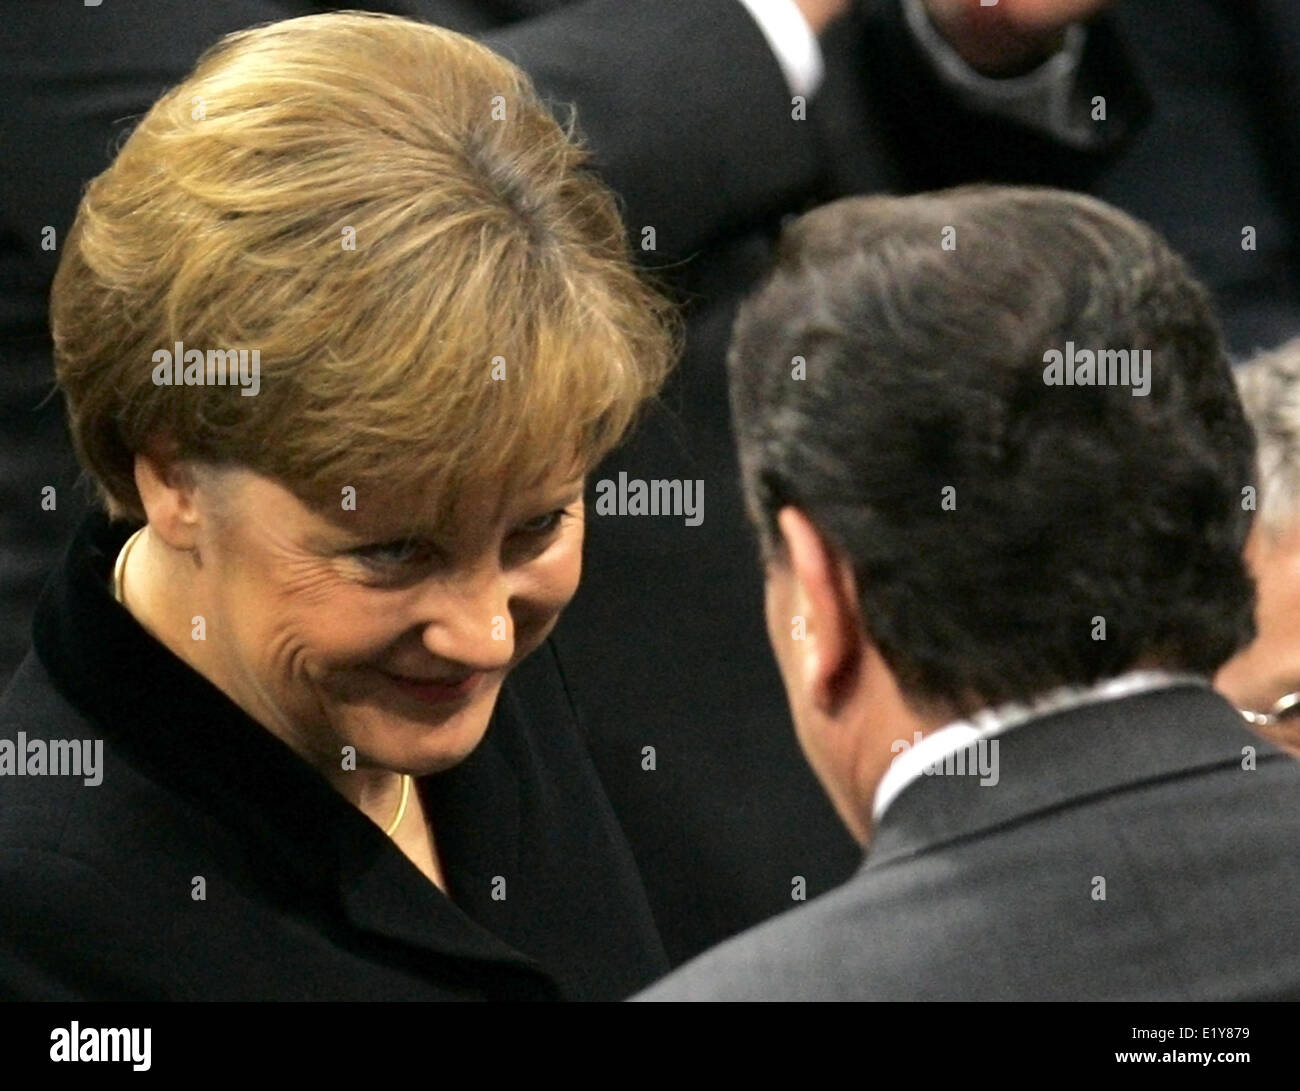 Bundeskanzler Gerhard Schröder (SPD) verlassen gratuliert neue Bundeskanzlerin Angela Merkel (CDU) zu ihrer Wahl (22.11.2005).  Foto: Peer Grimm Dpa/Lbn +++(c) Dpa - Bericht +++ Stockfoto